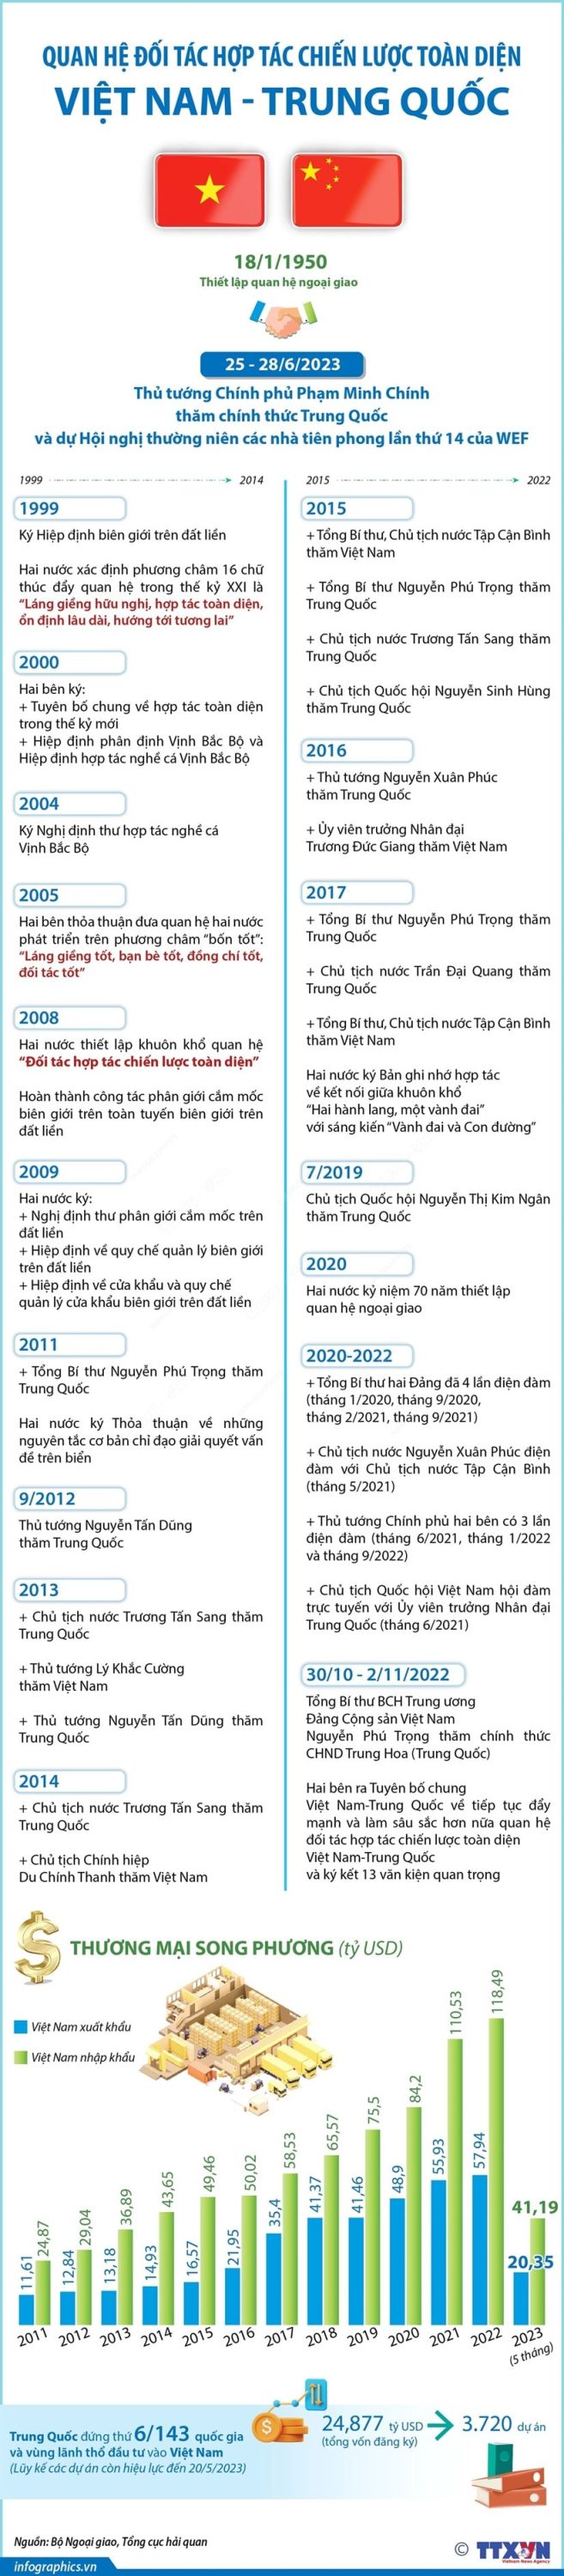 Quan he Doi tac hop tac chien luoc toan dien Viet Nam Trung Quoc min 657x3000 - Quan hệ Đối tác hợp tác chiến lược toàn diện Việt Nam-Trung Quốc